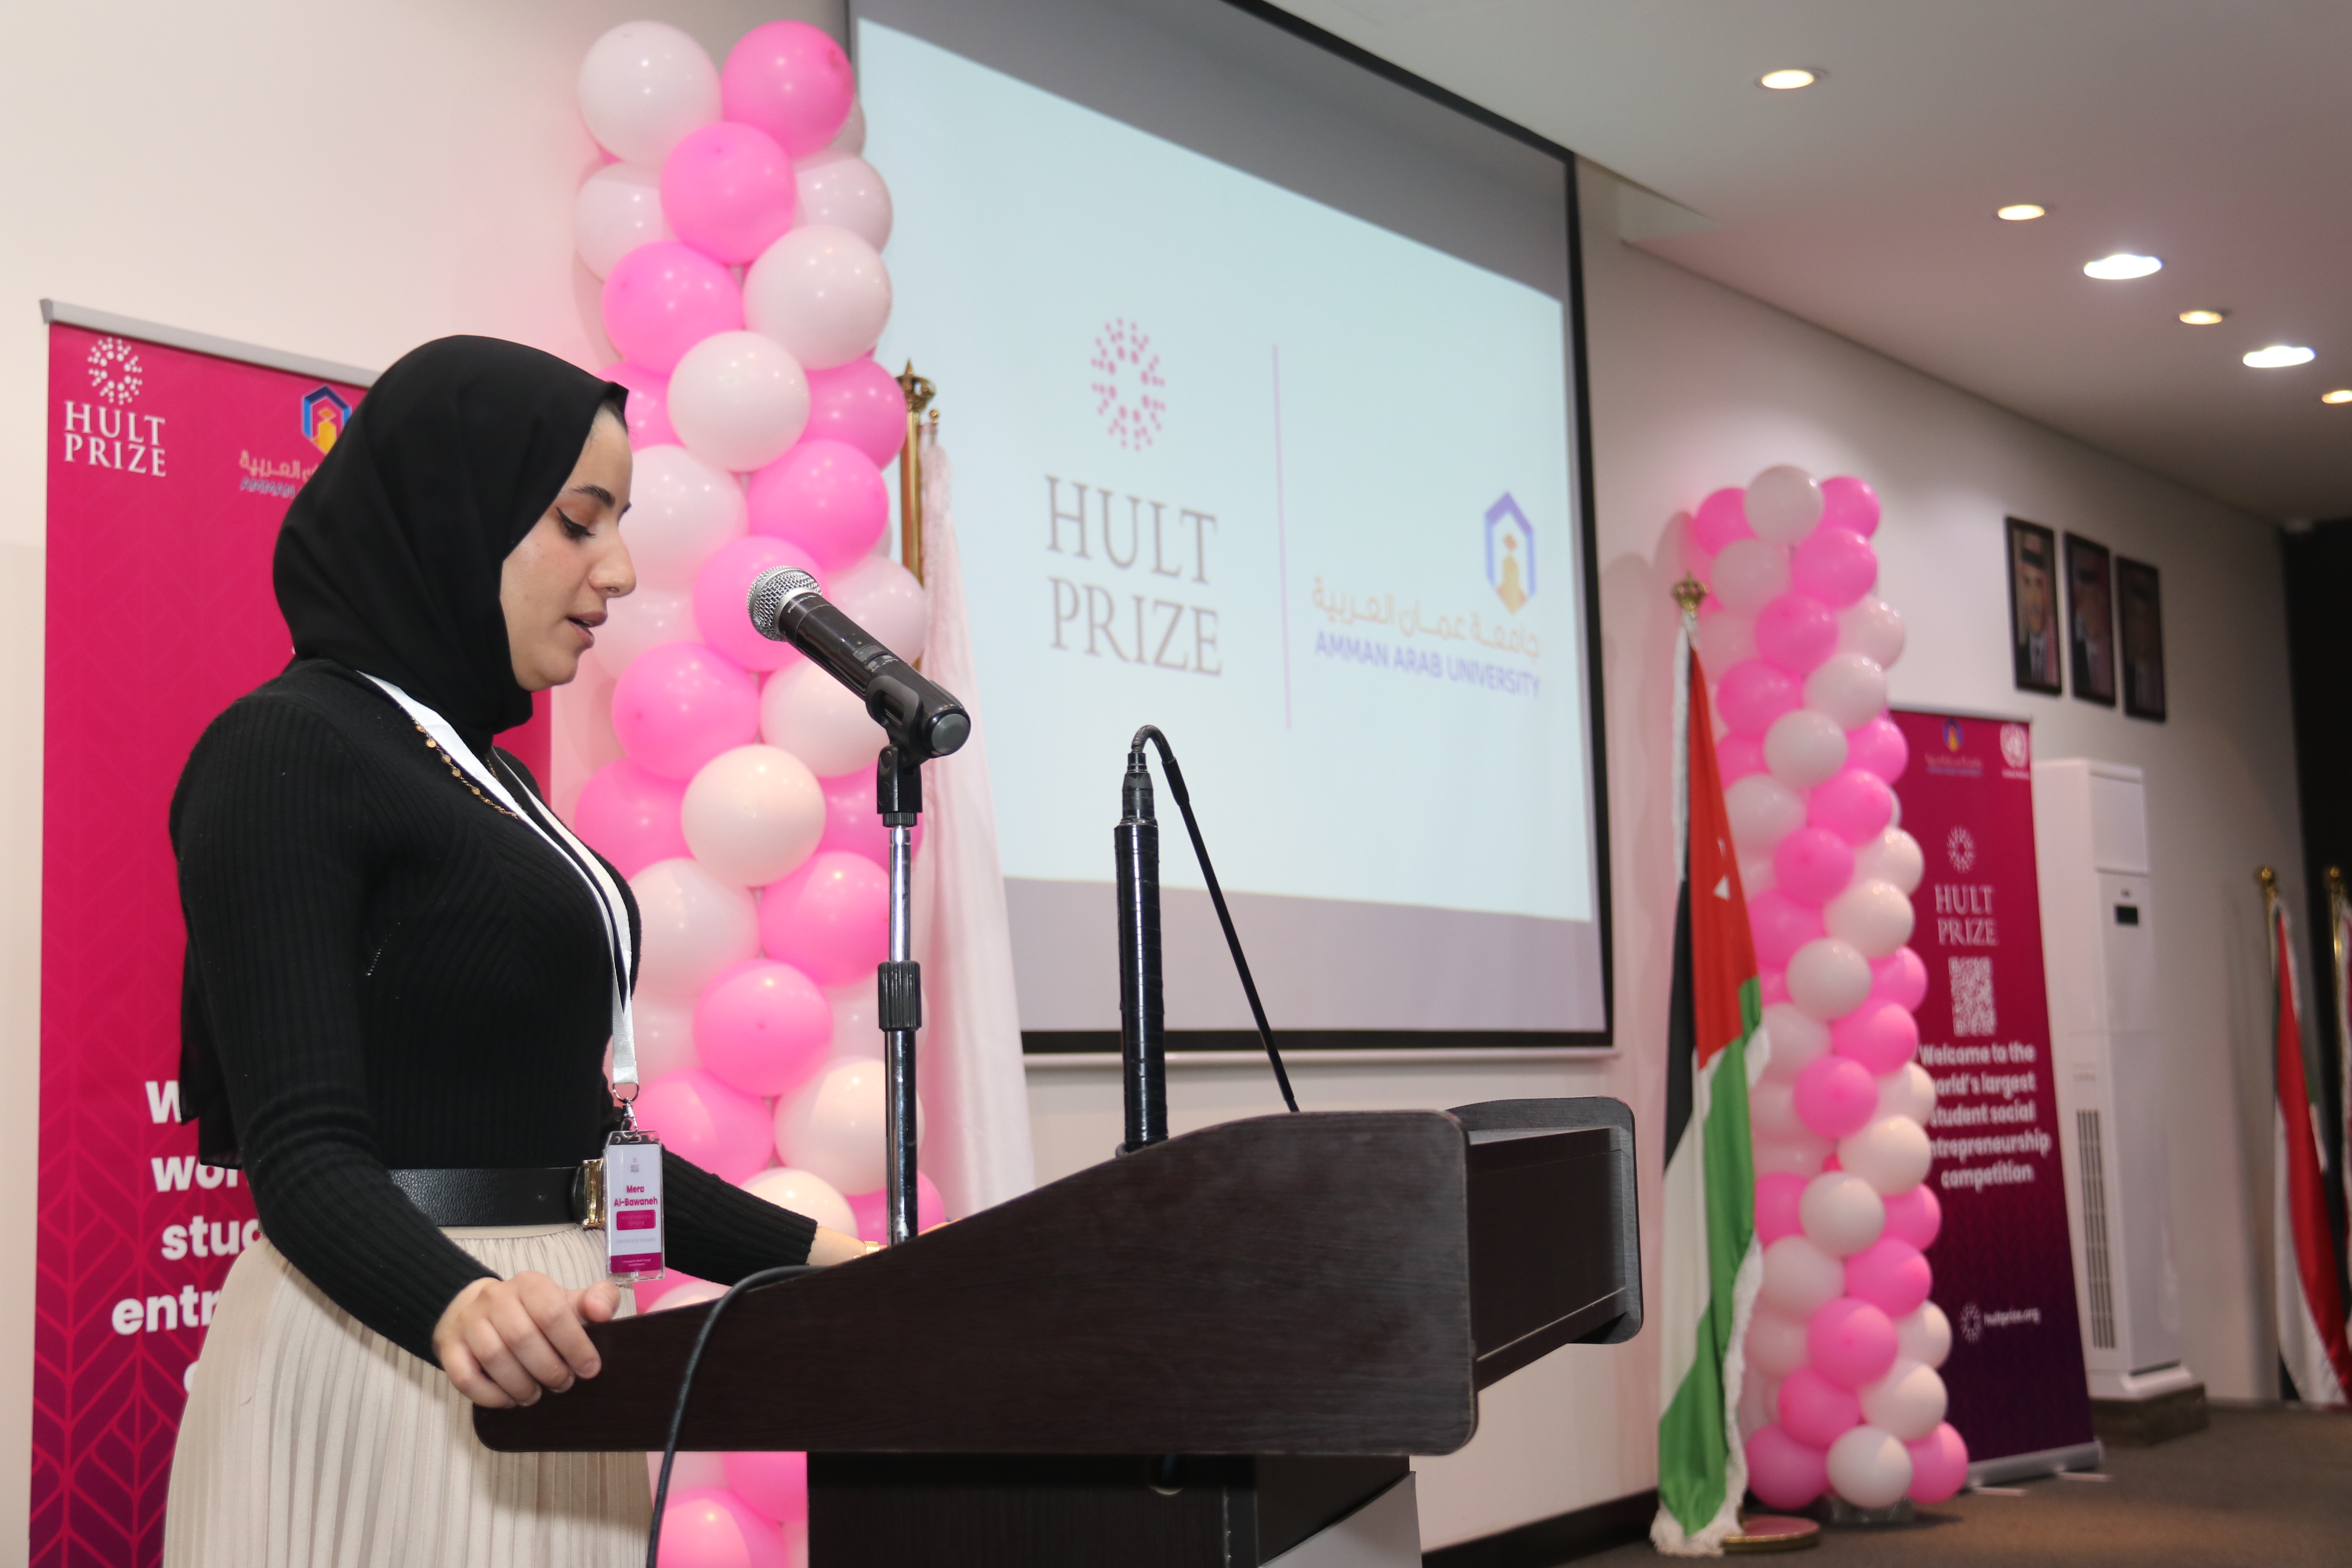 إطلاق فعاليات مسابقة "هالت برايز" في جامعة عمان العربية6